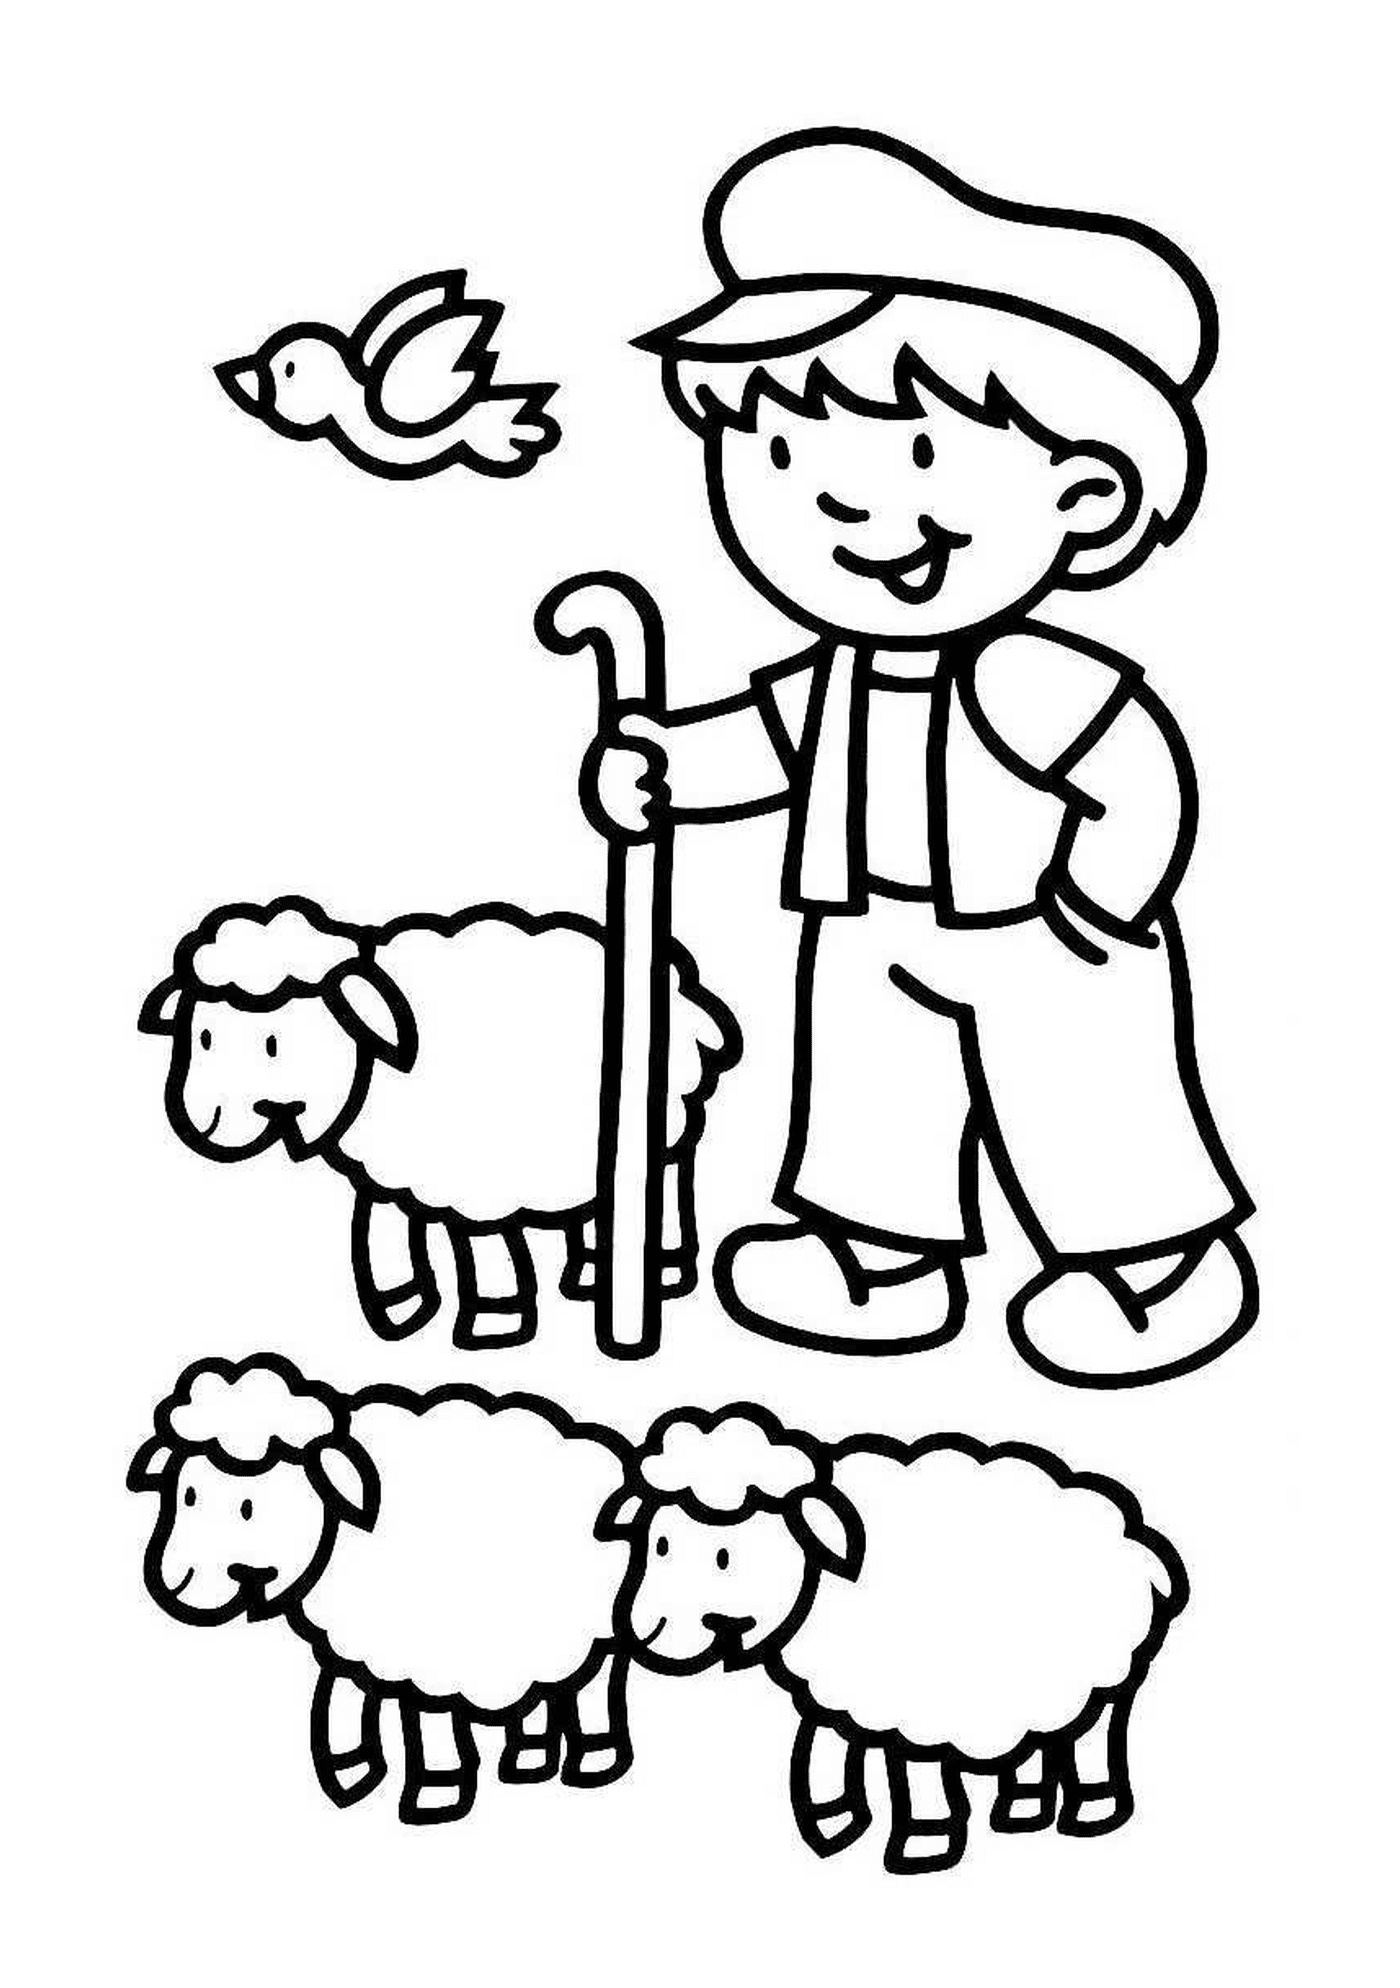  Agricultor cercado por muitas ovelhas 